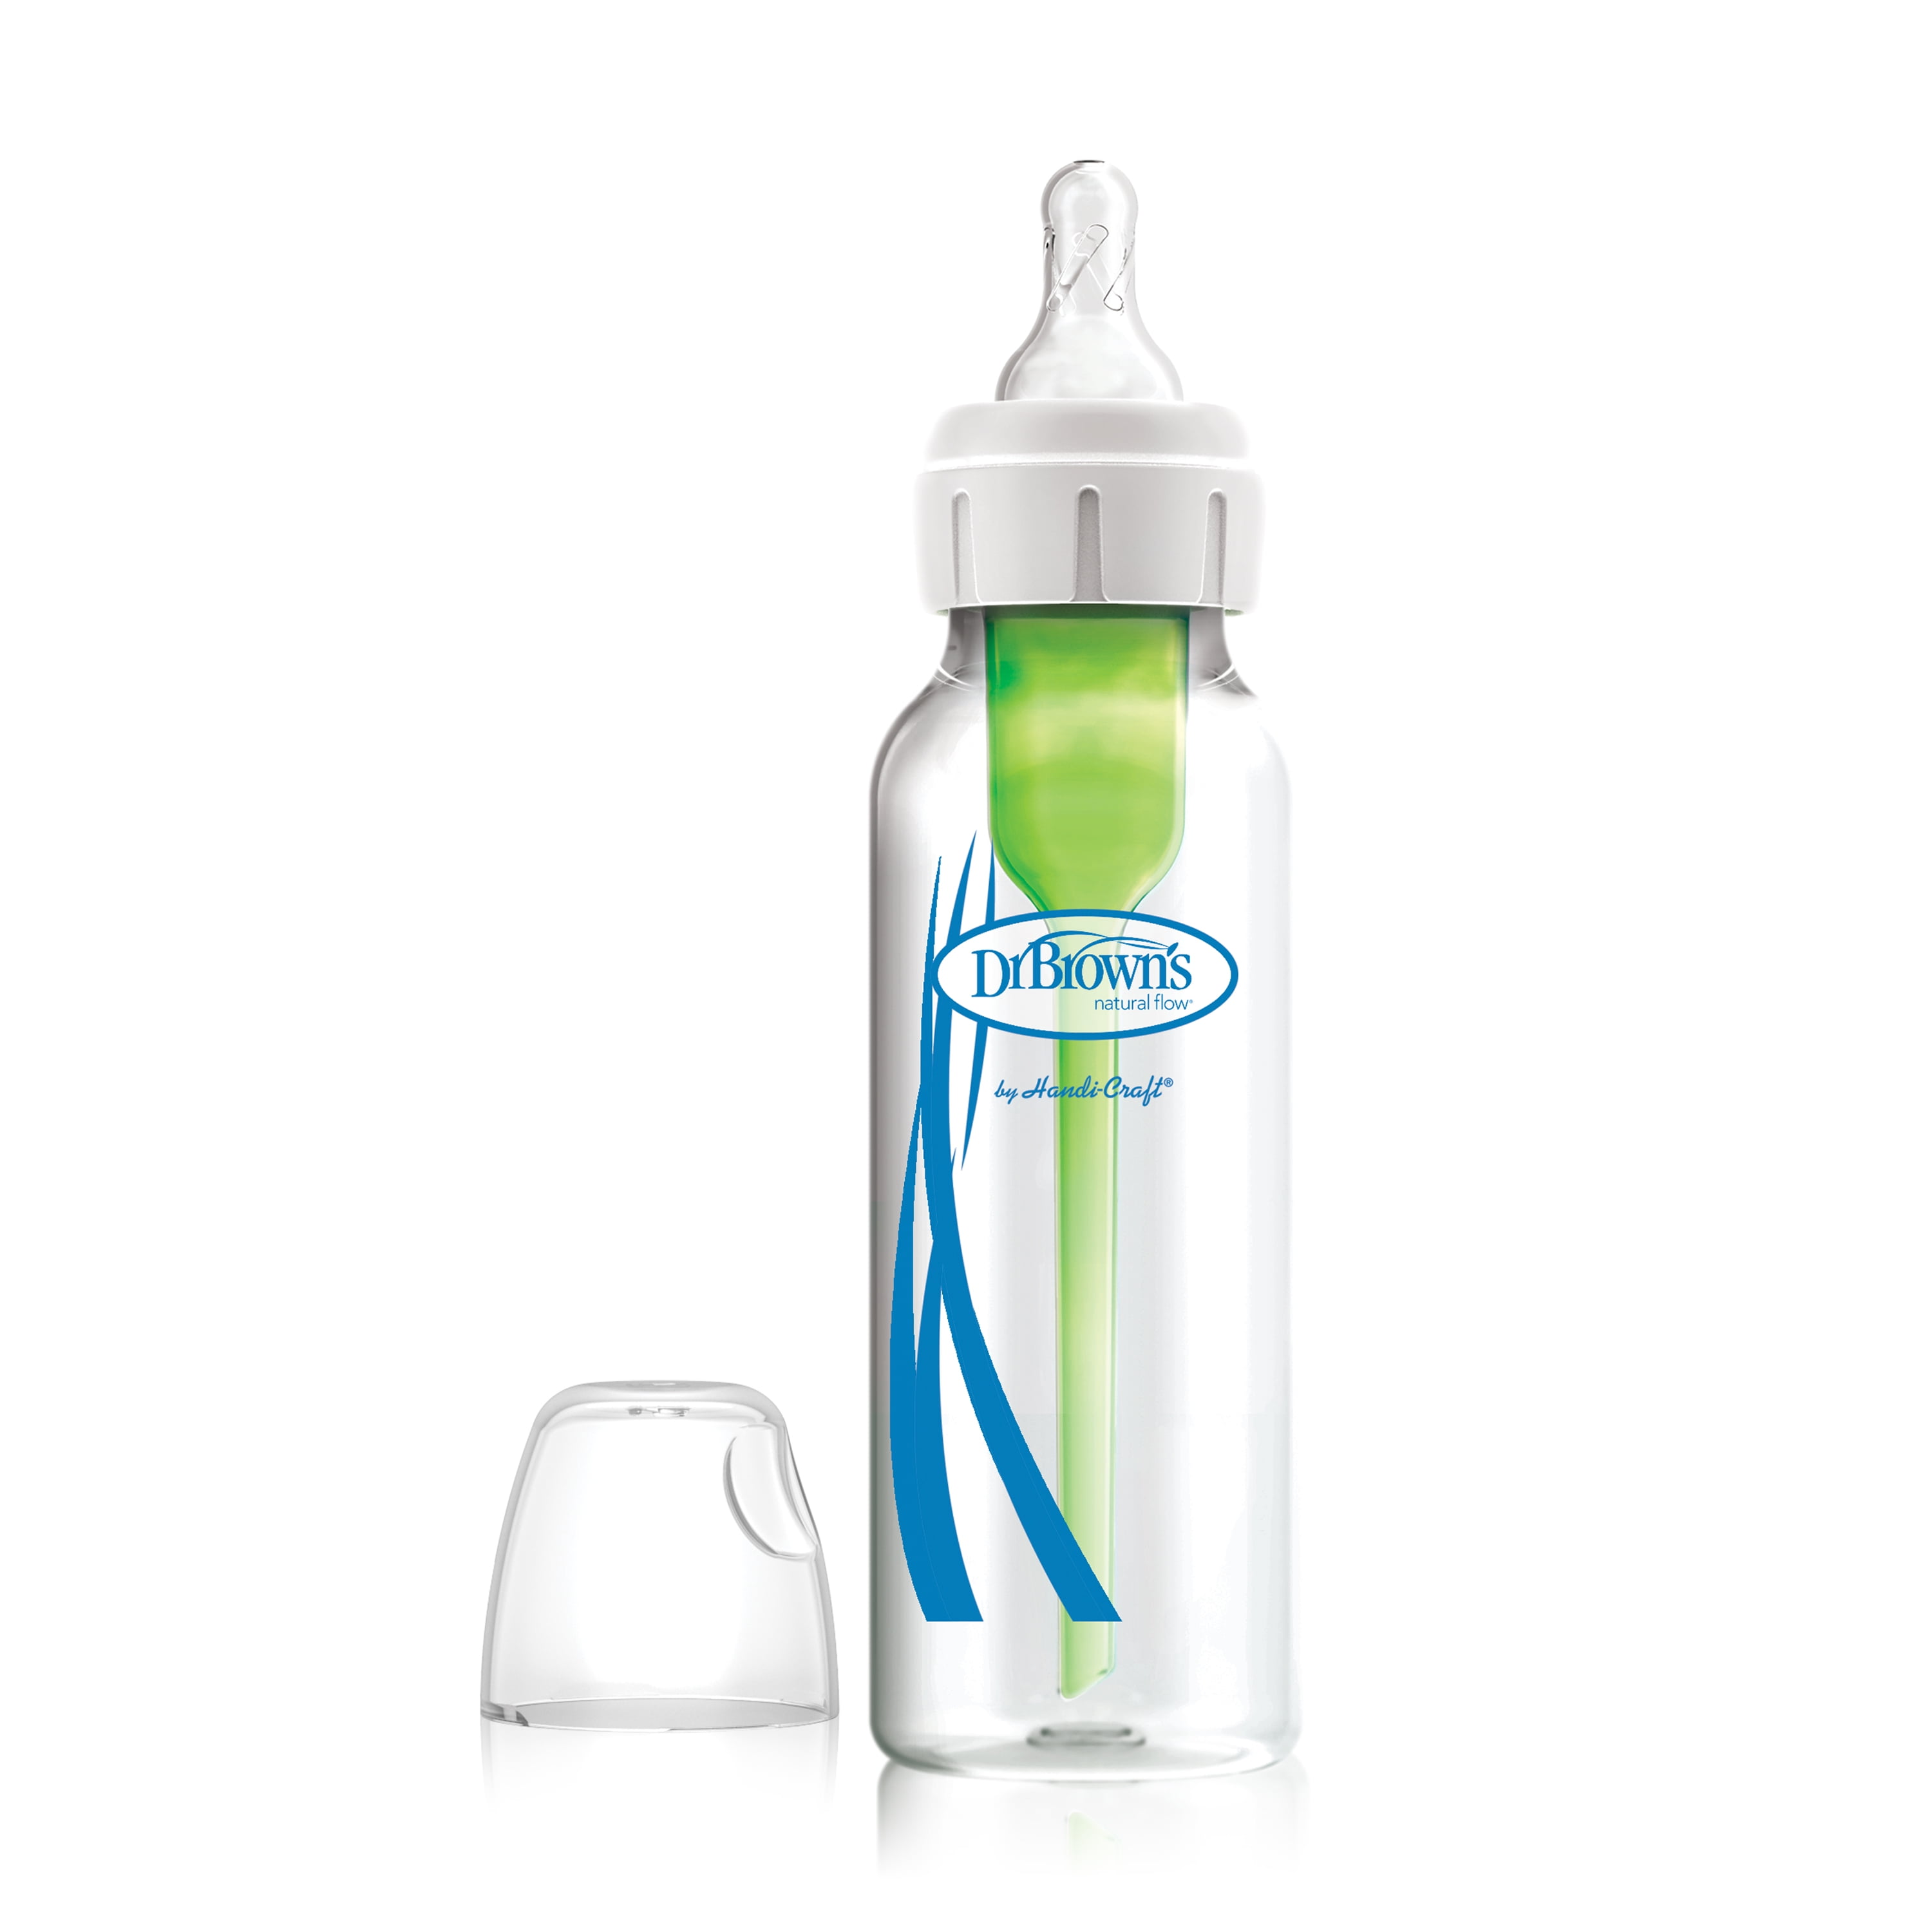 Reduces Colic Set of 2 Dr Brown's BABY BOTTLES Natural Flow 4 oz Bottles 0M+ 